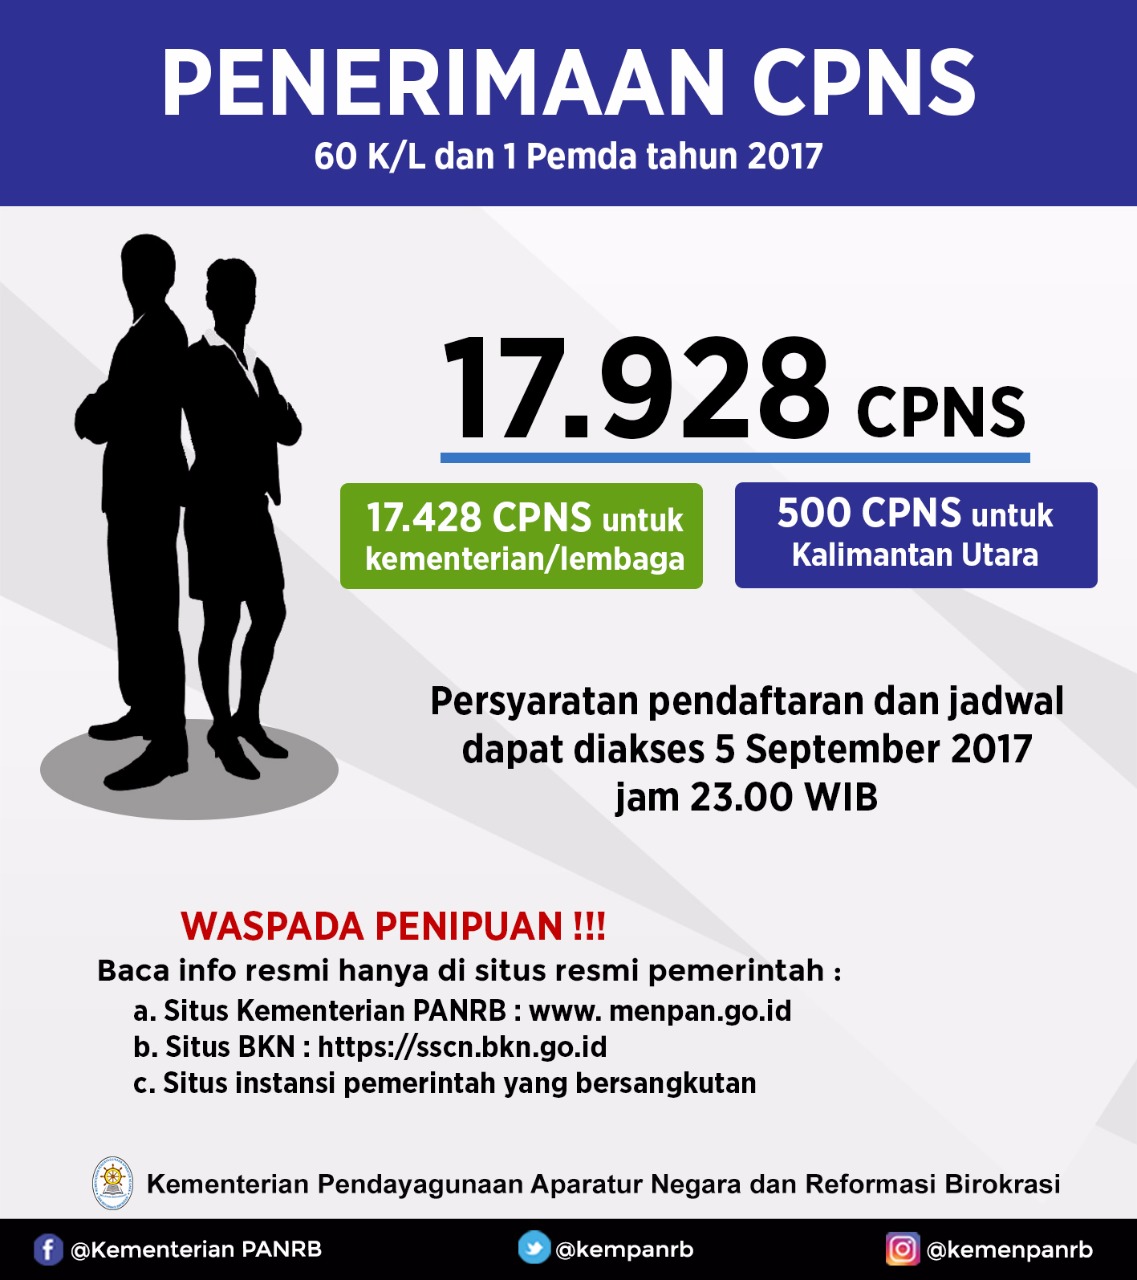 Pendaftaran Cpns / Formasi Sudah Diumumkan Pendaftaran Cpns Buka Hari